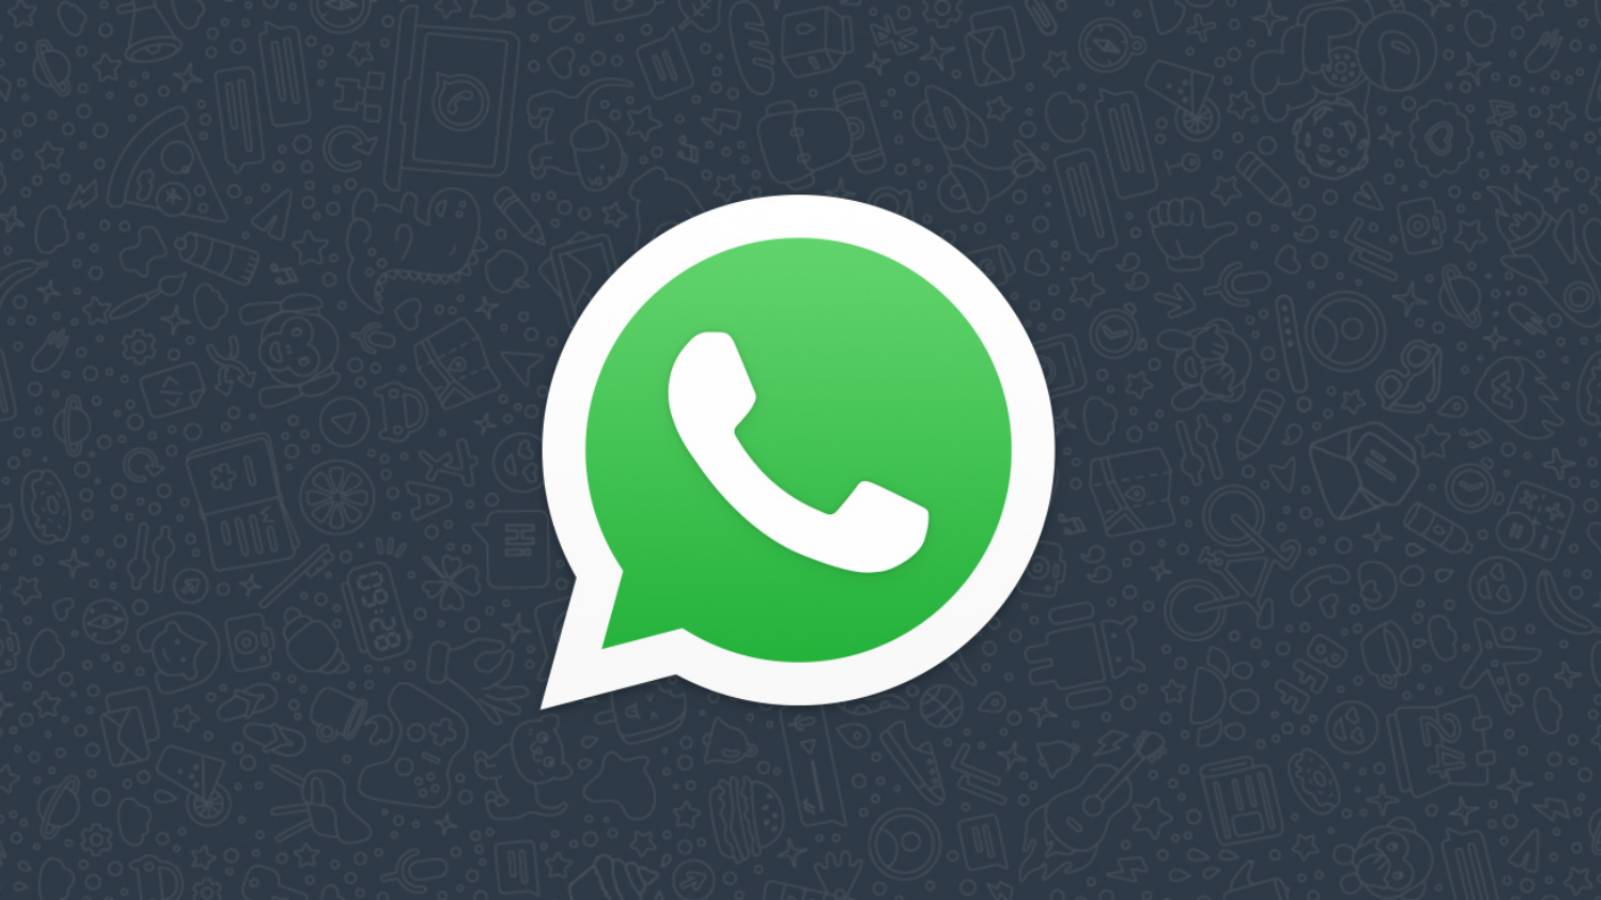 Rozprzestrzenianie się WhatsAppa